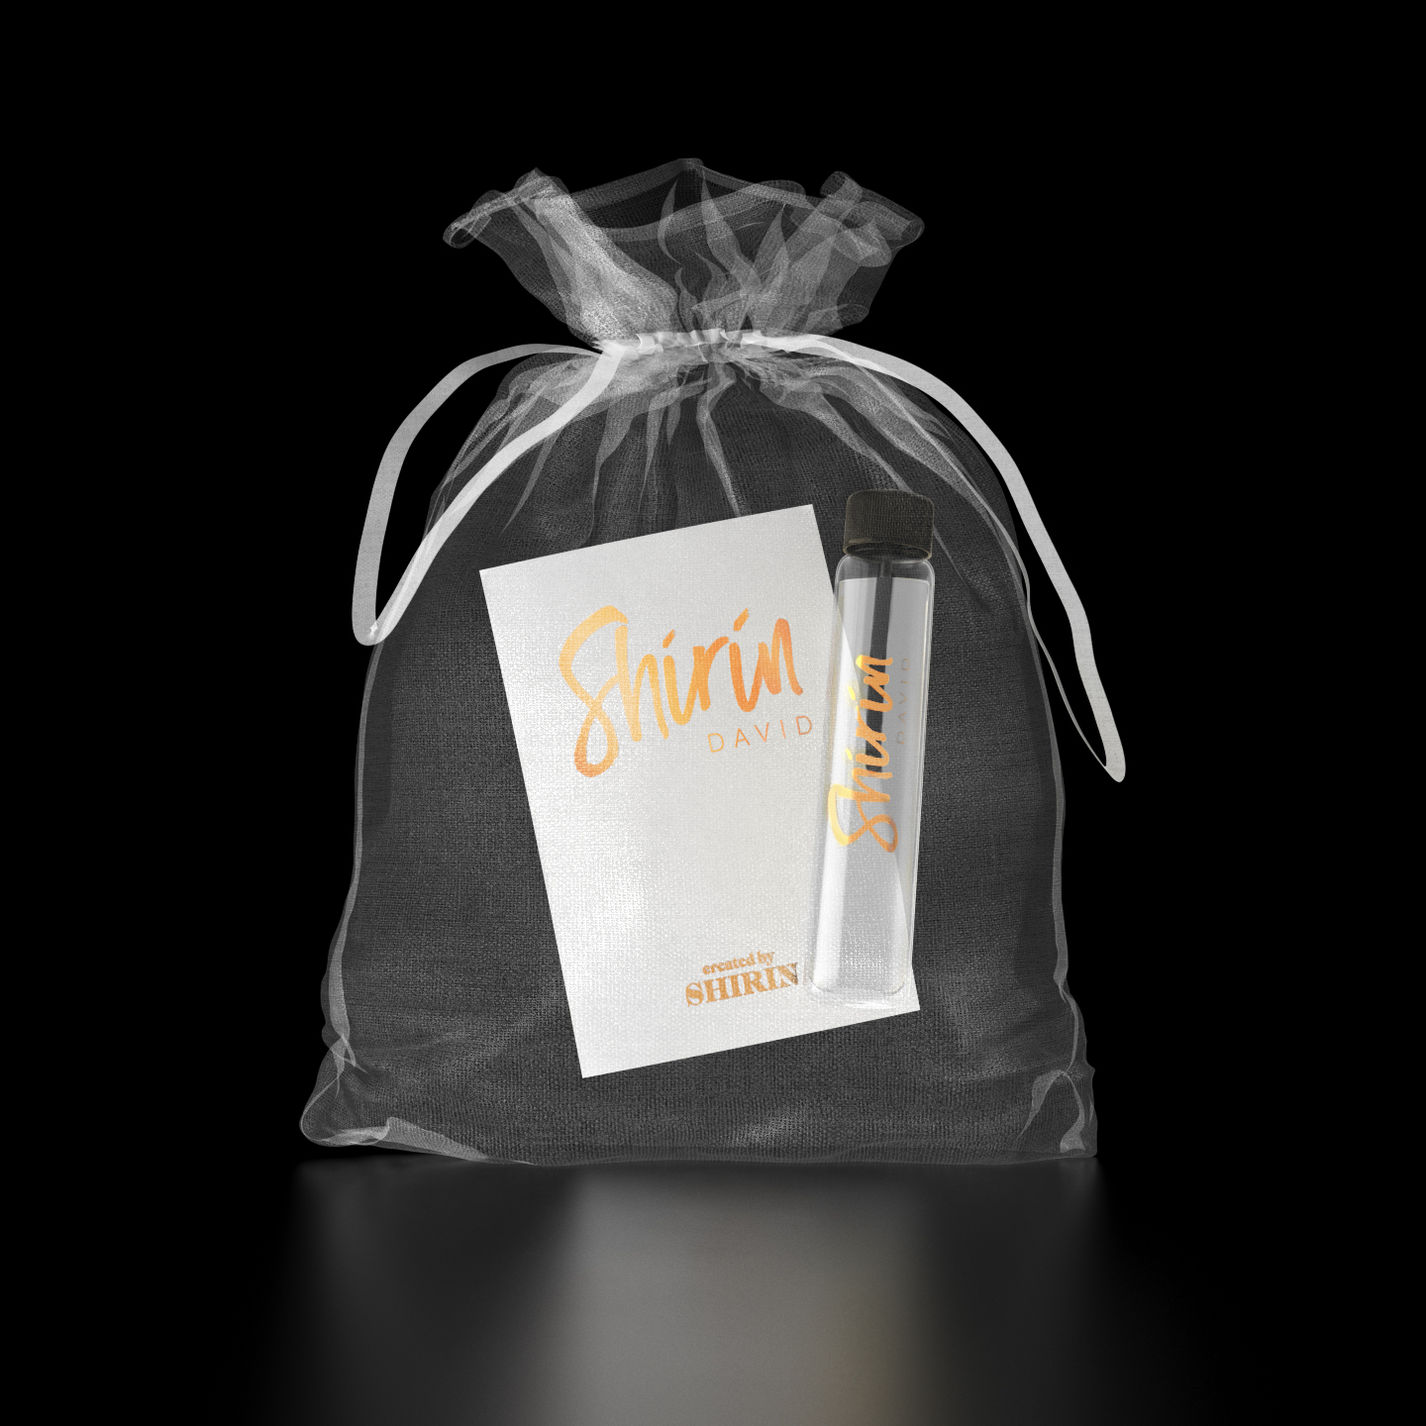 Supersize Limited Deluxe Box CD von Shirin David bei Weltbild.de